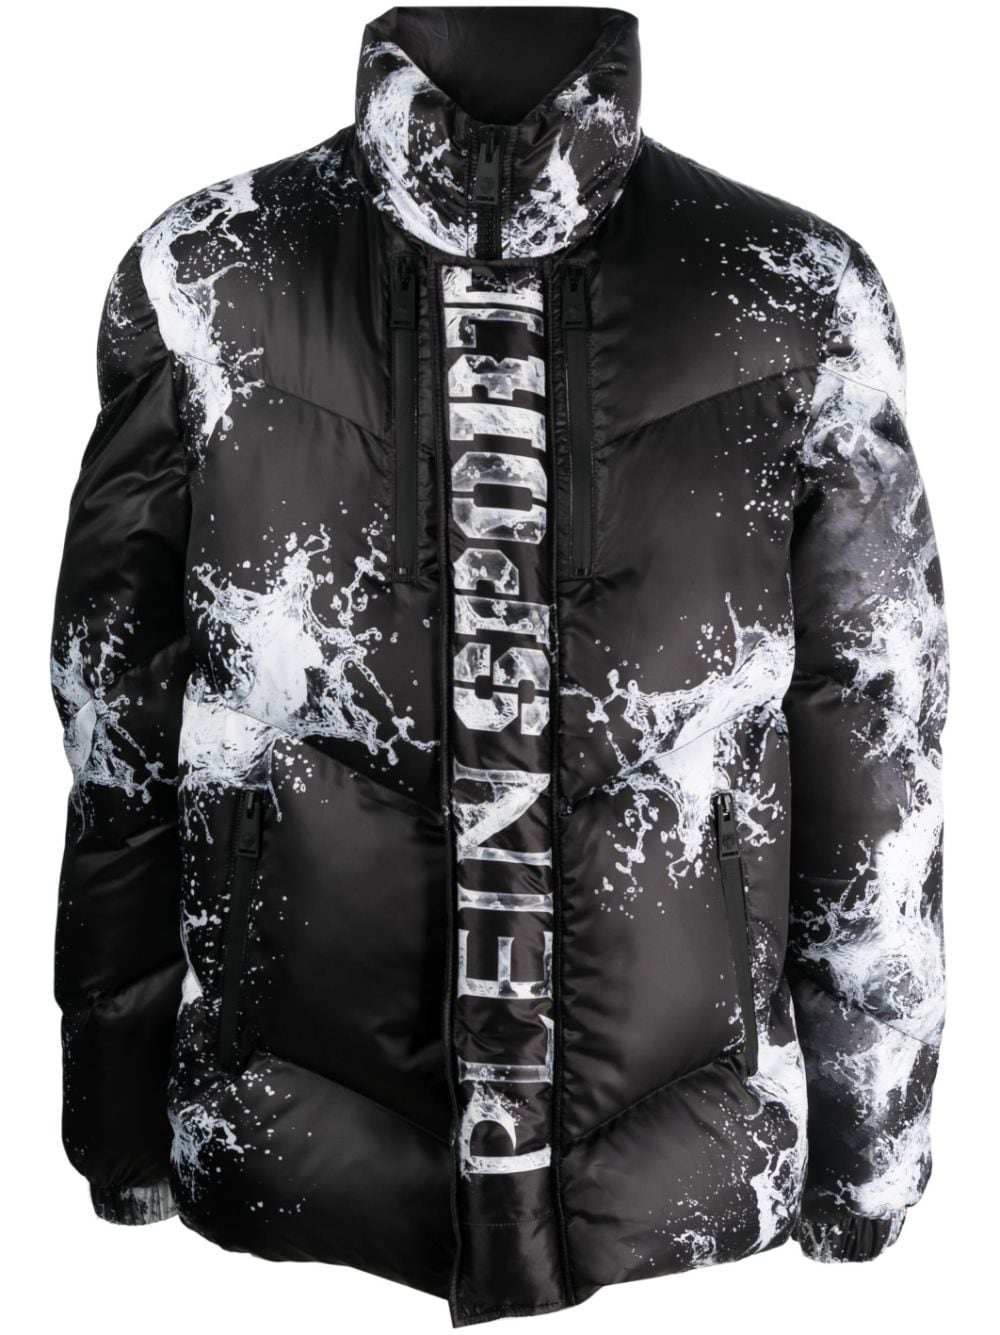 Splash Extreme padded jacket